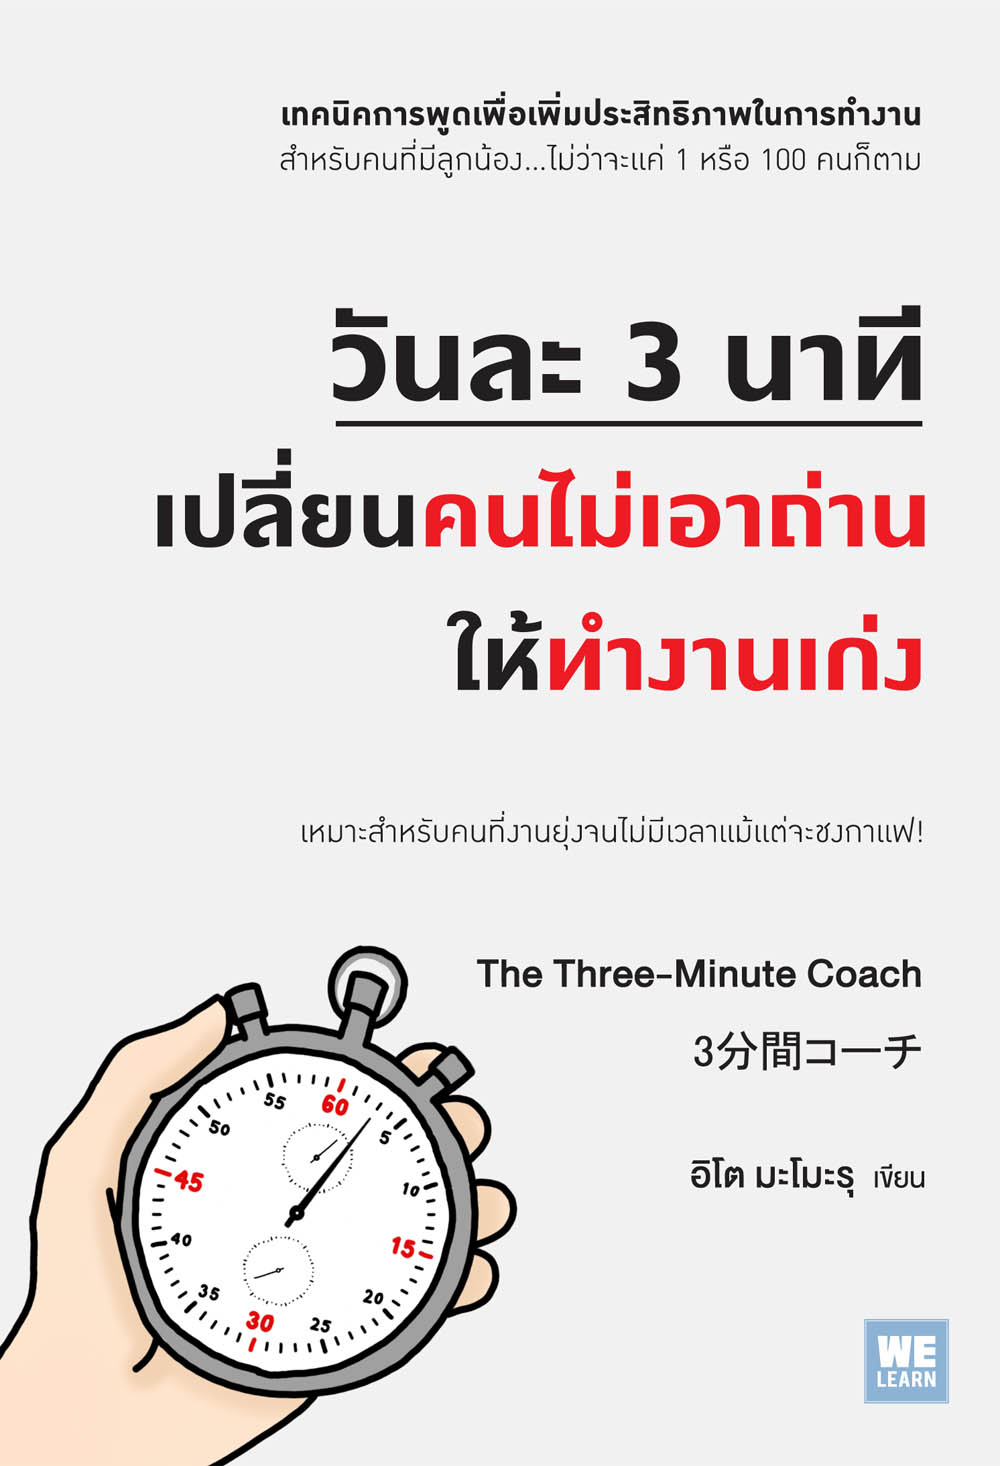 วันละ 3 นาที เปลี่ยนคนไม่เอาถ่าน ให้ทำงานเก่ง  (3分間コーチ The Three-Minute Coach)